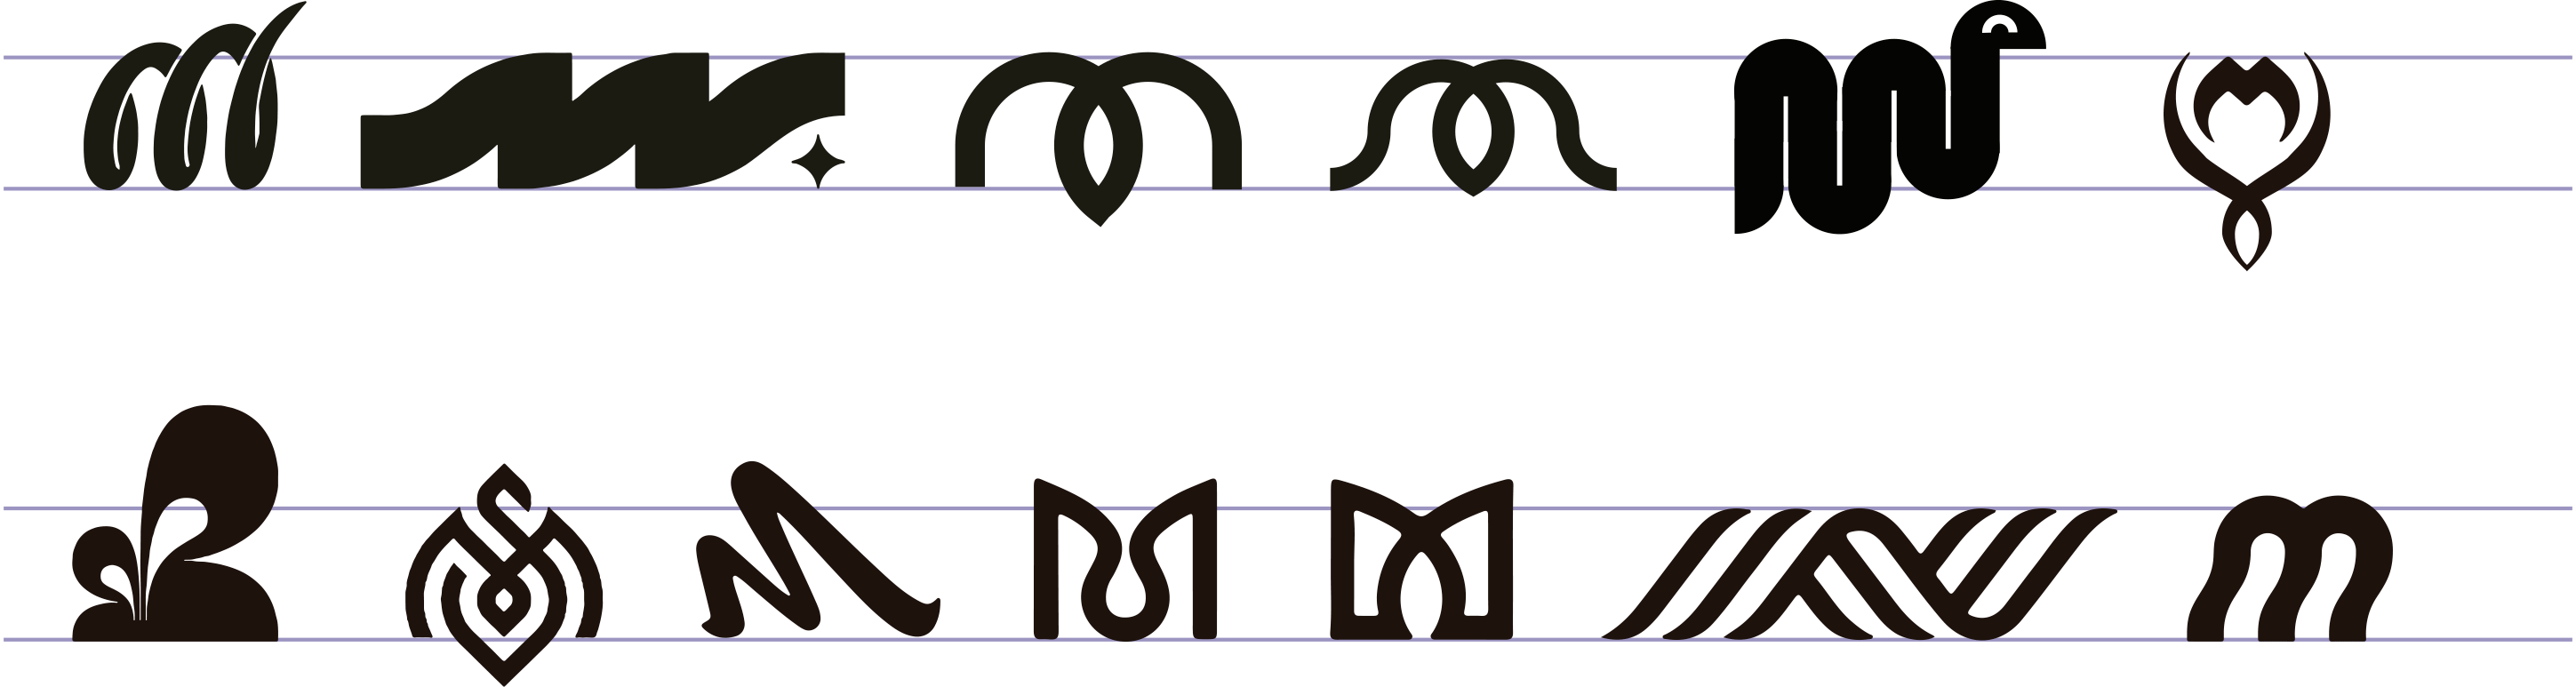 Evolución del logo de Mamba